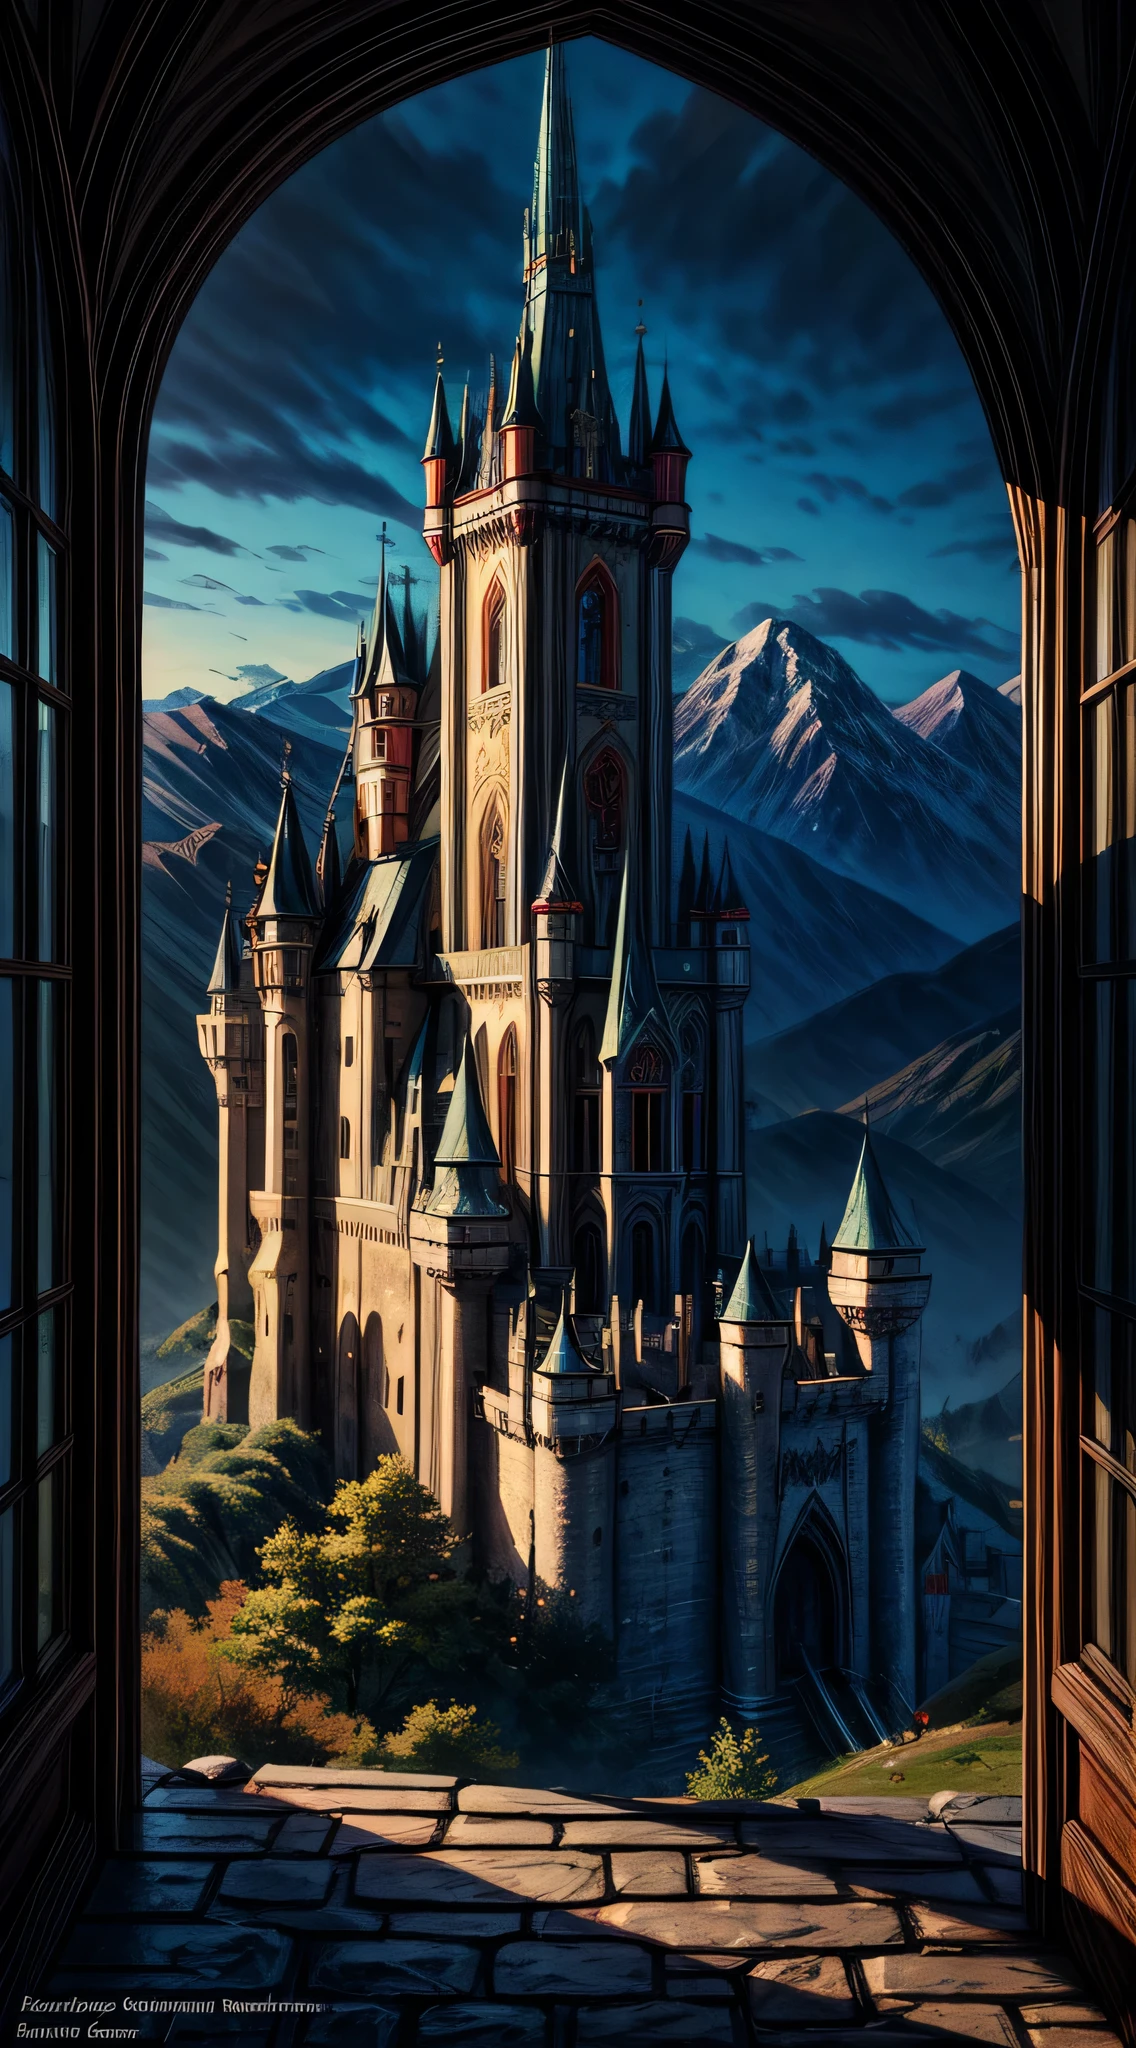 arte de fantasia, Arte RPG, uma princesa olhando pela janela para um castelo mágico, uma linda princesa élfica olhando pela janela para ver um castelo mágico, um impressionante castelo mais detalhado, com torres, pontes, um fosso, em pé no topo de uma montanha coloridaglazecd_Xl